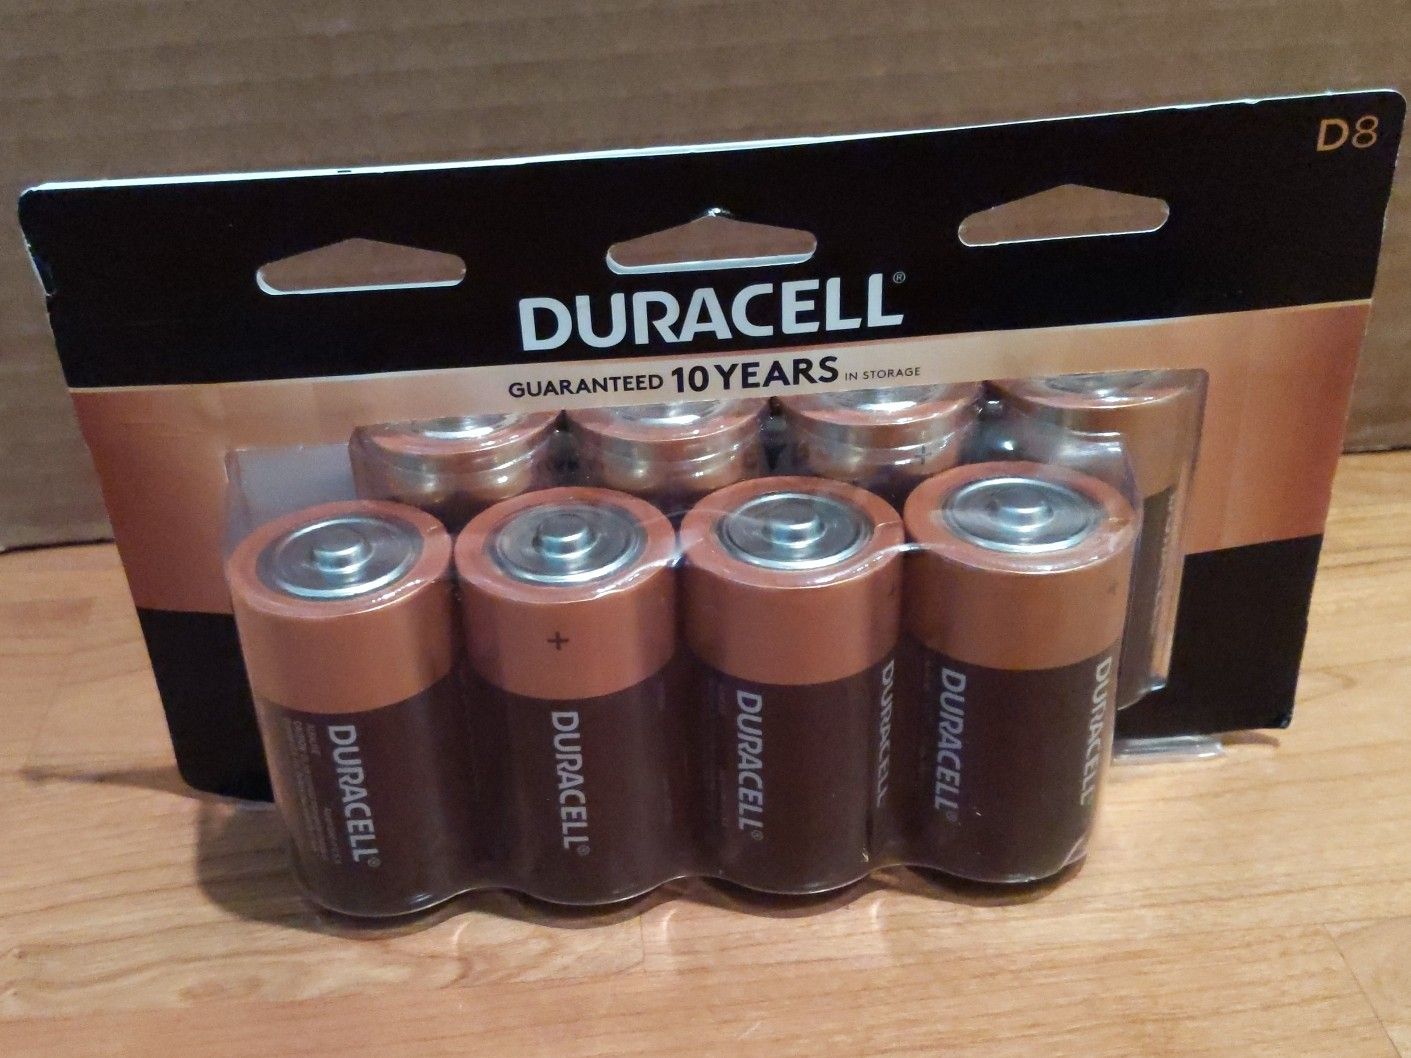 Duracell Coppertop D alkaline batteries, 8 pack